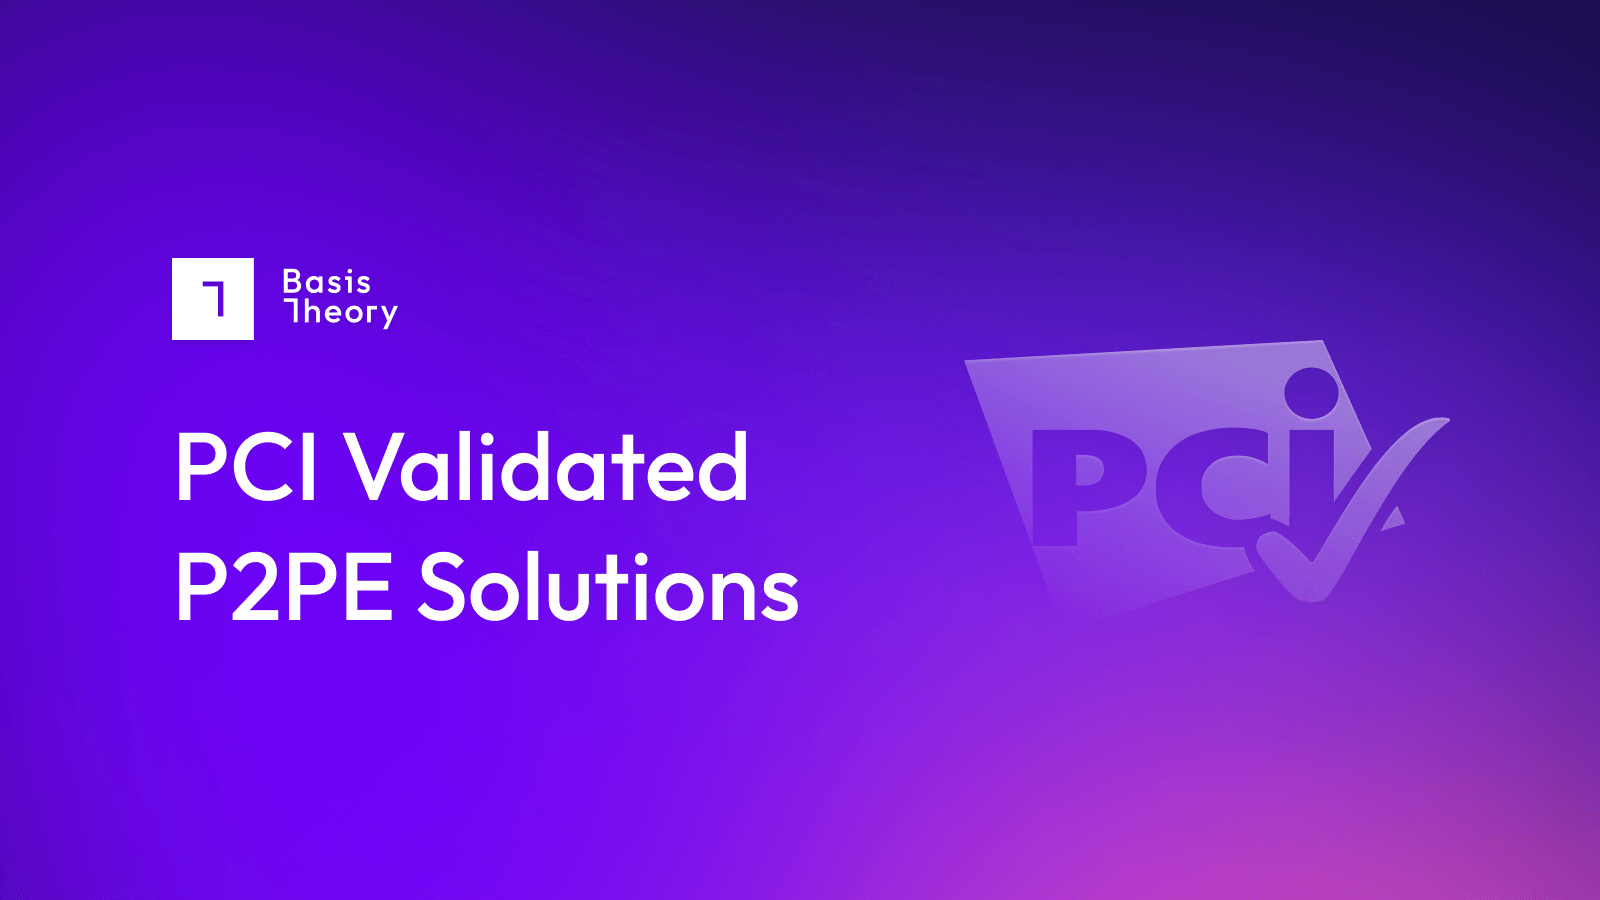 PCI validated P2PE